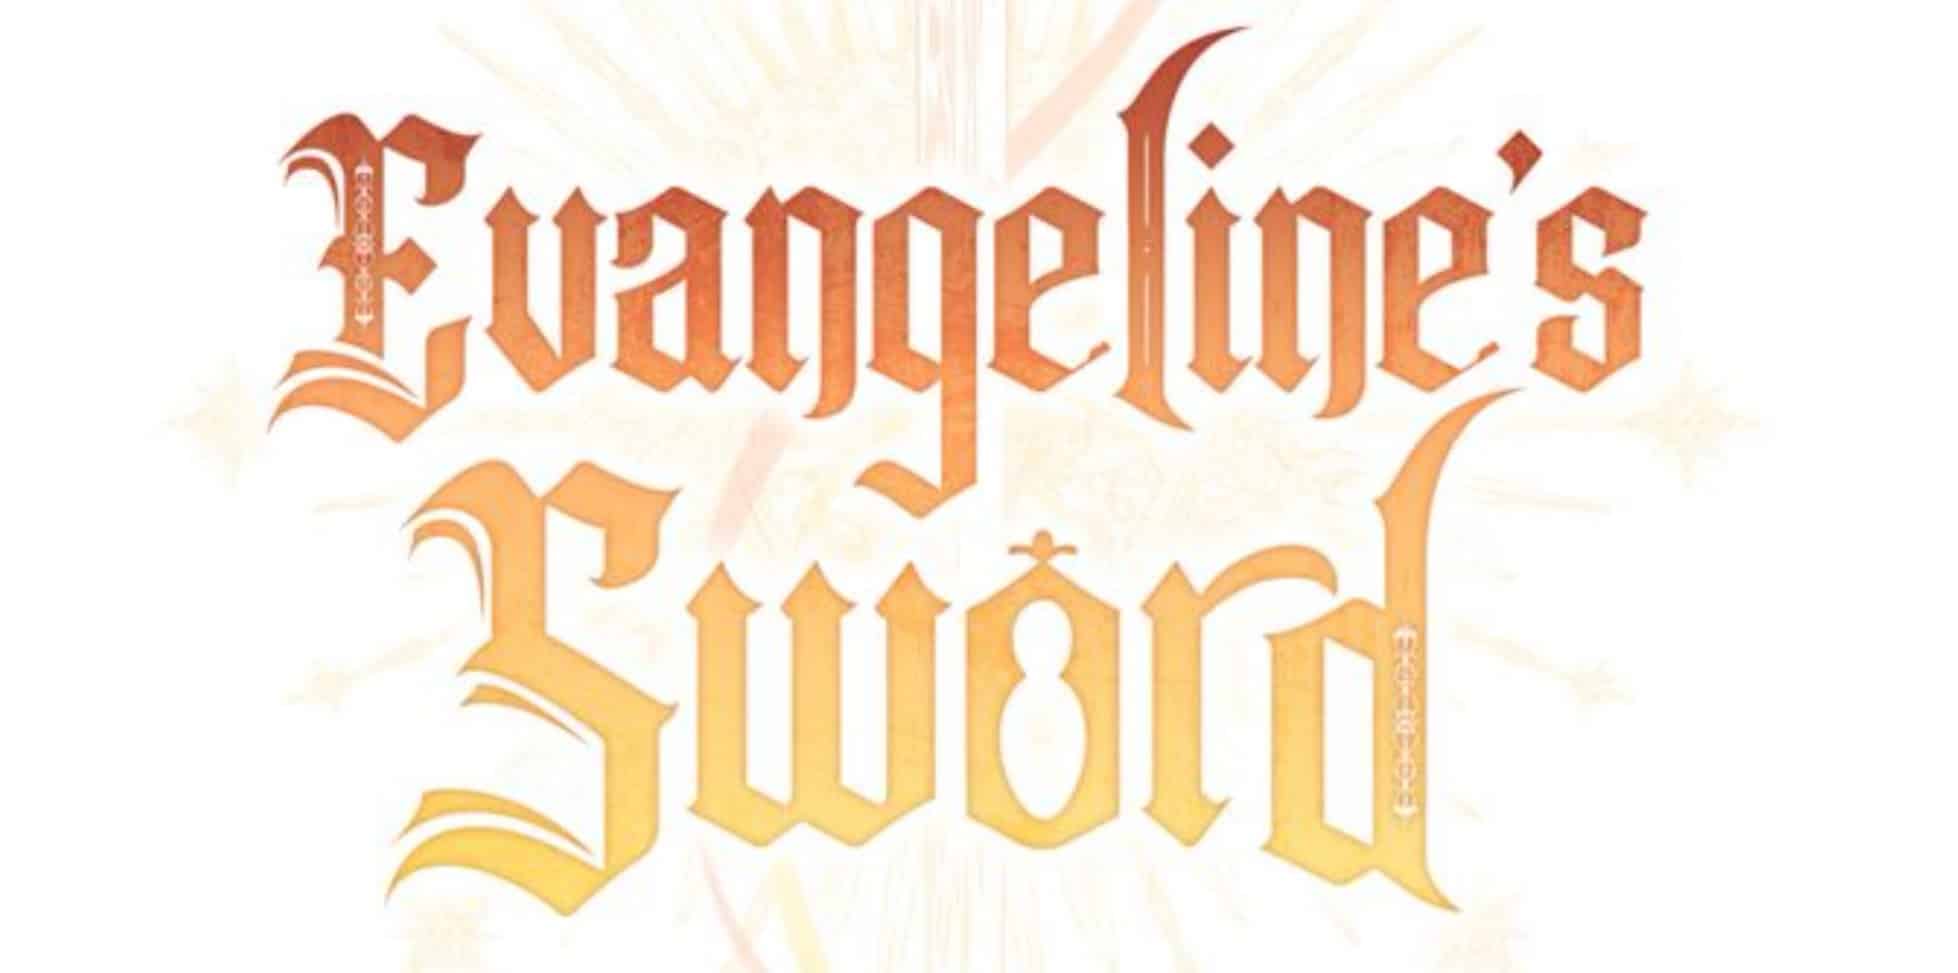 Evangeline's Sword